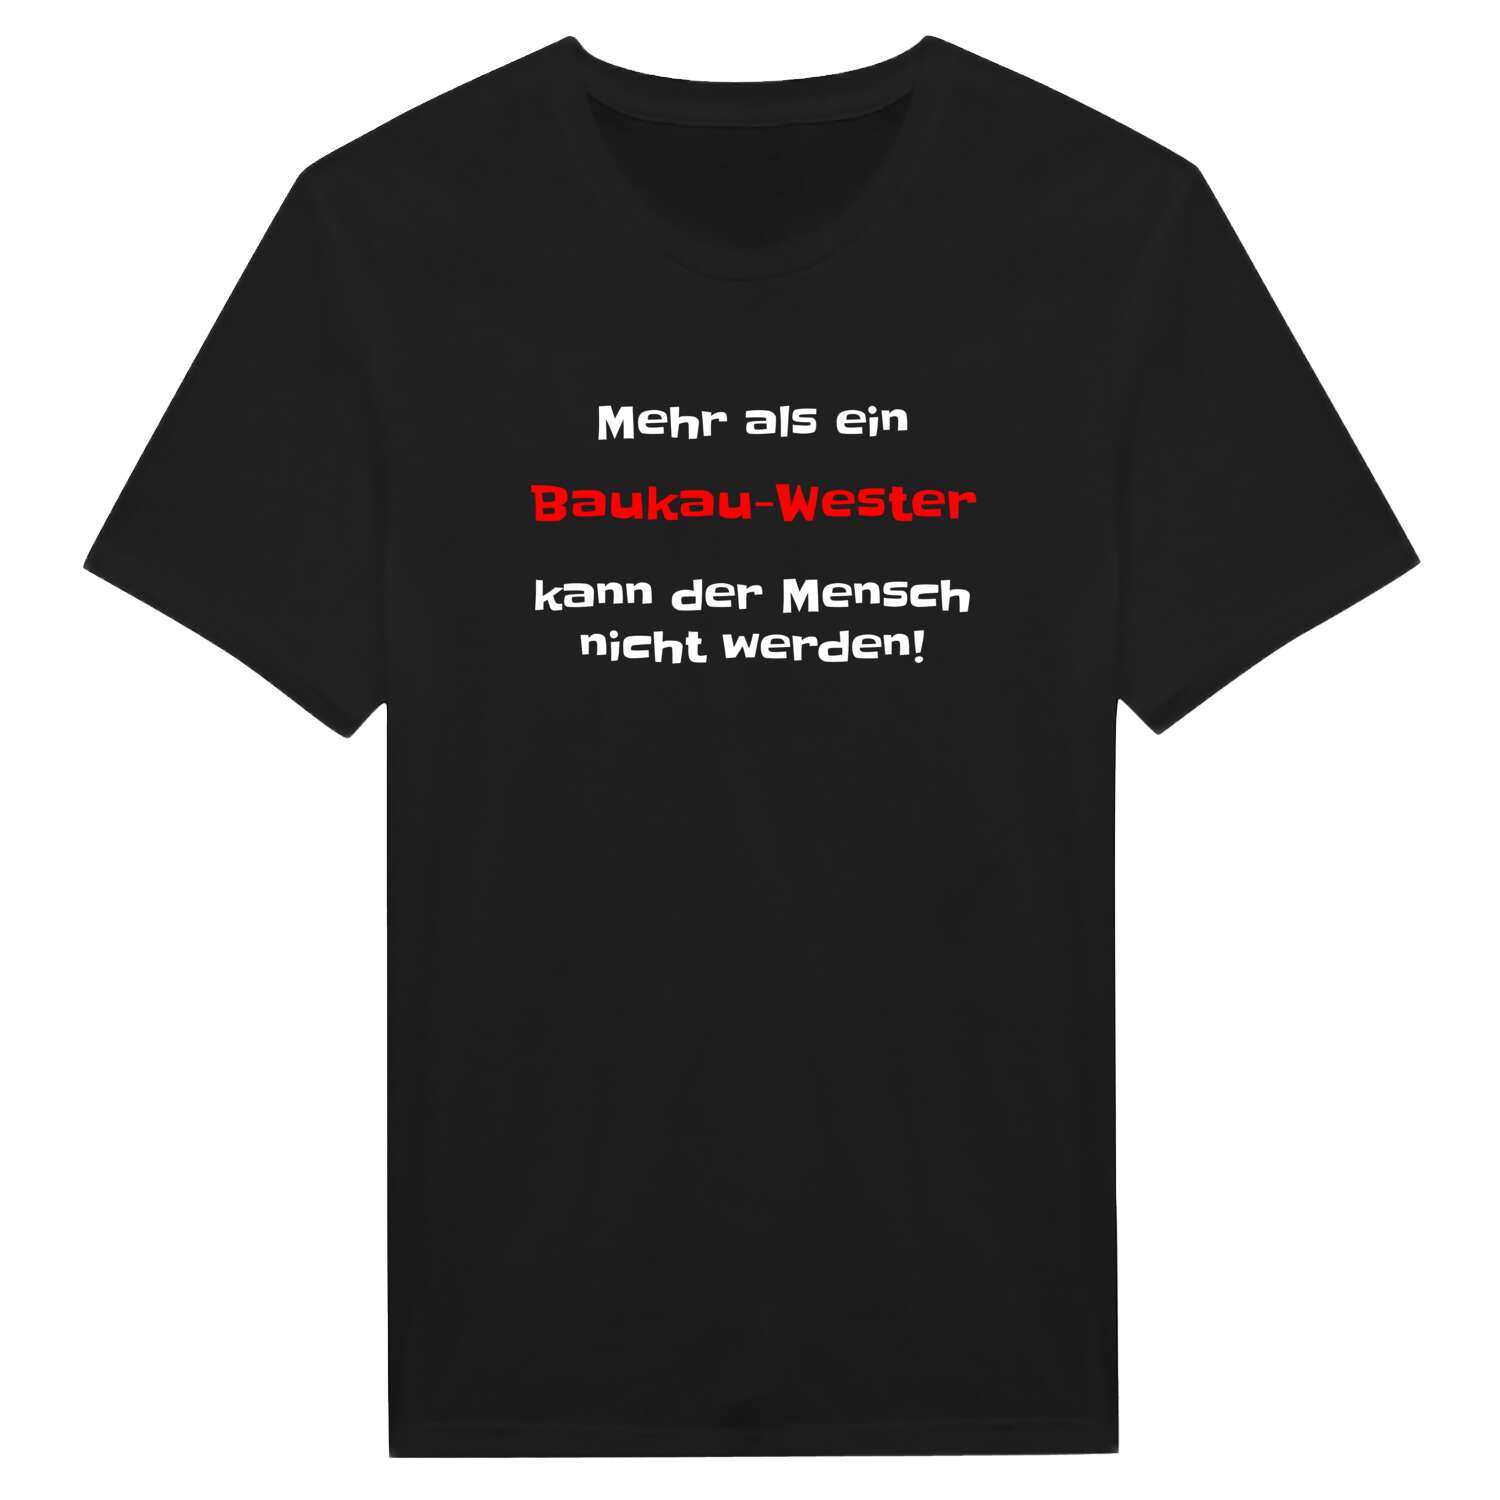 Baukau-West T-Shirt »Mehr als ein«